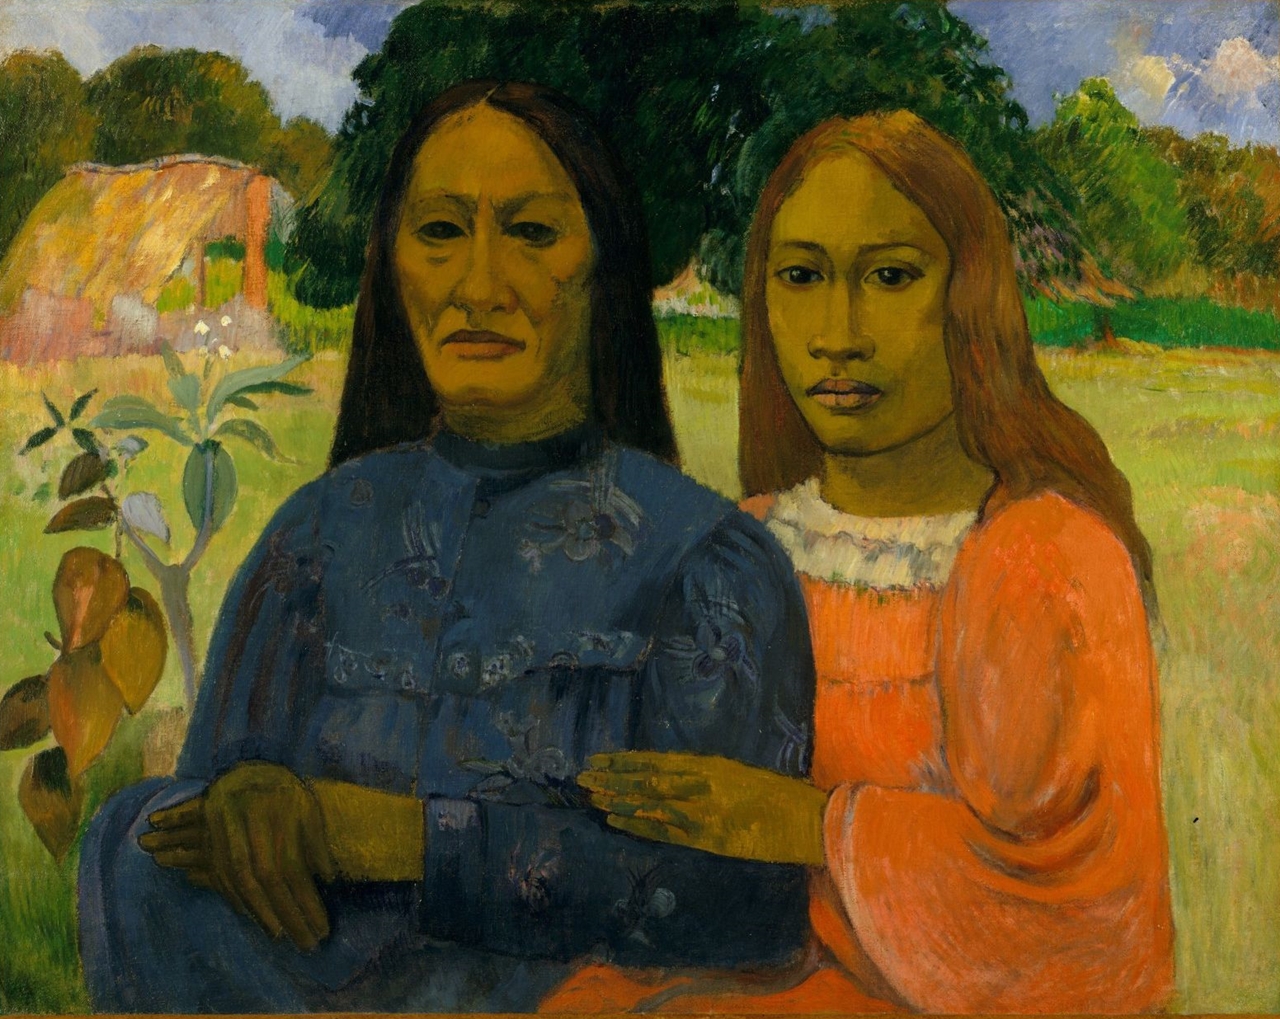 Paul+Gauguin-1848-1903 (501).jpg